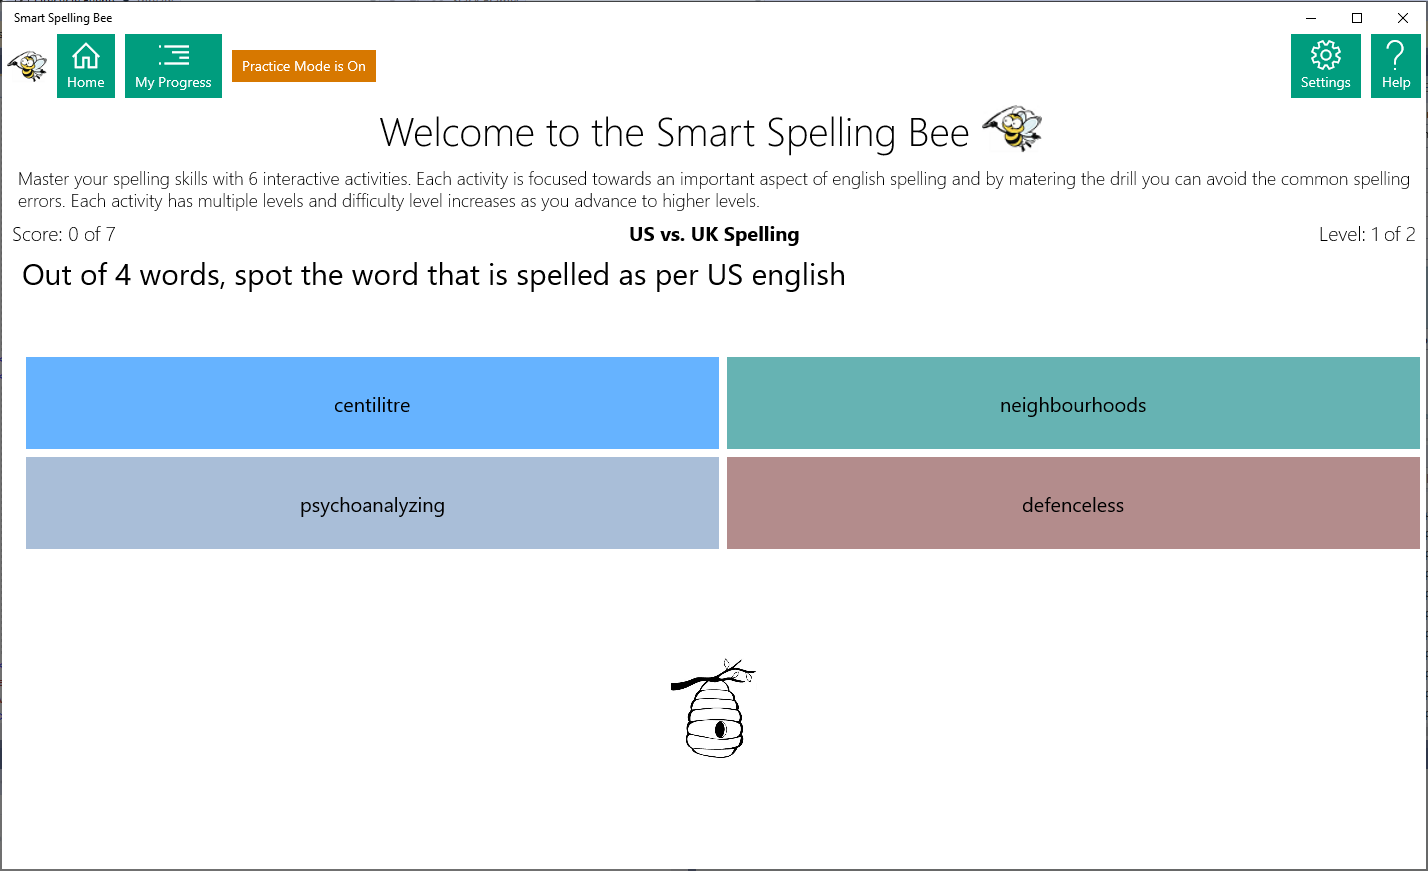 US vs. UK Spelling